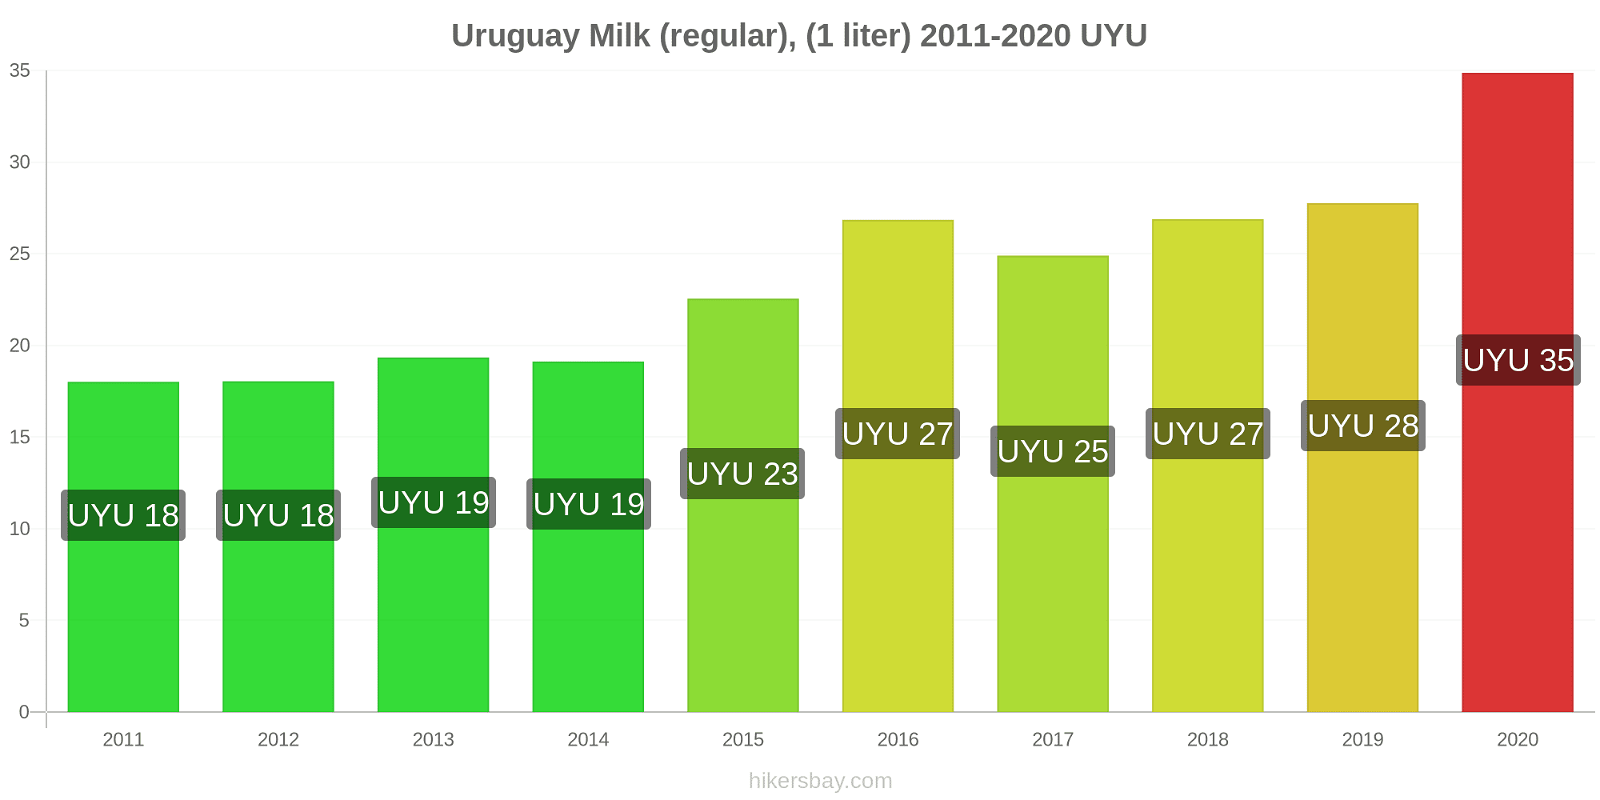 Uruguay price changes Milk (regular), (1 liter) hikersbay.com